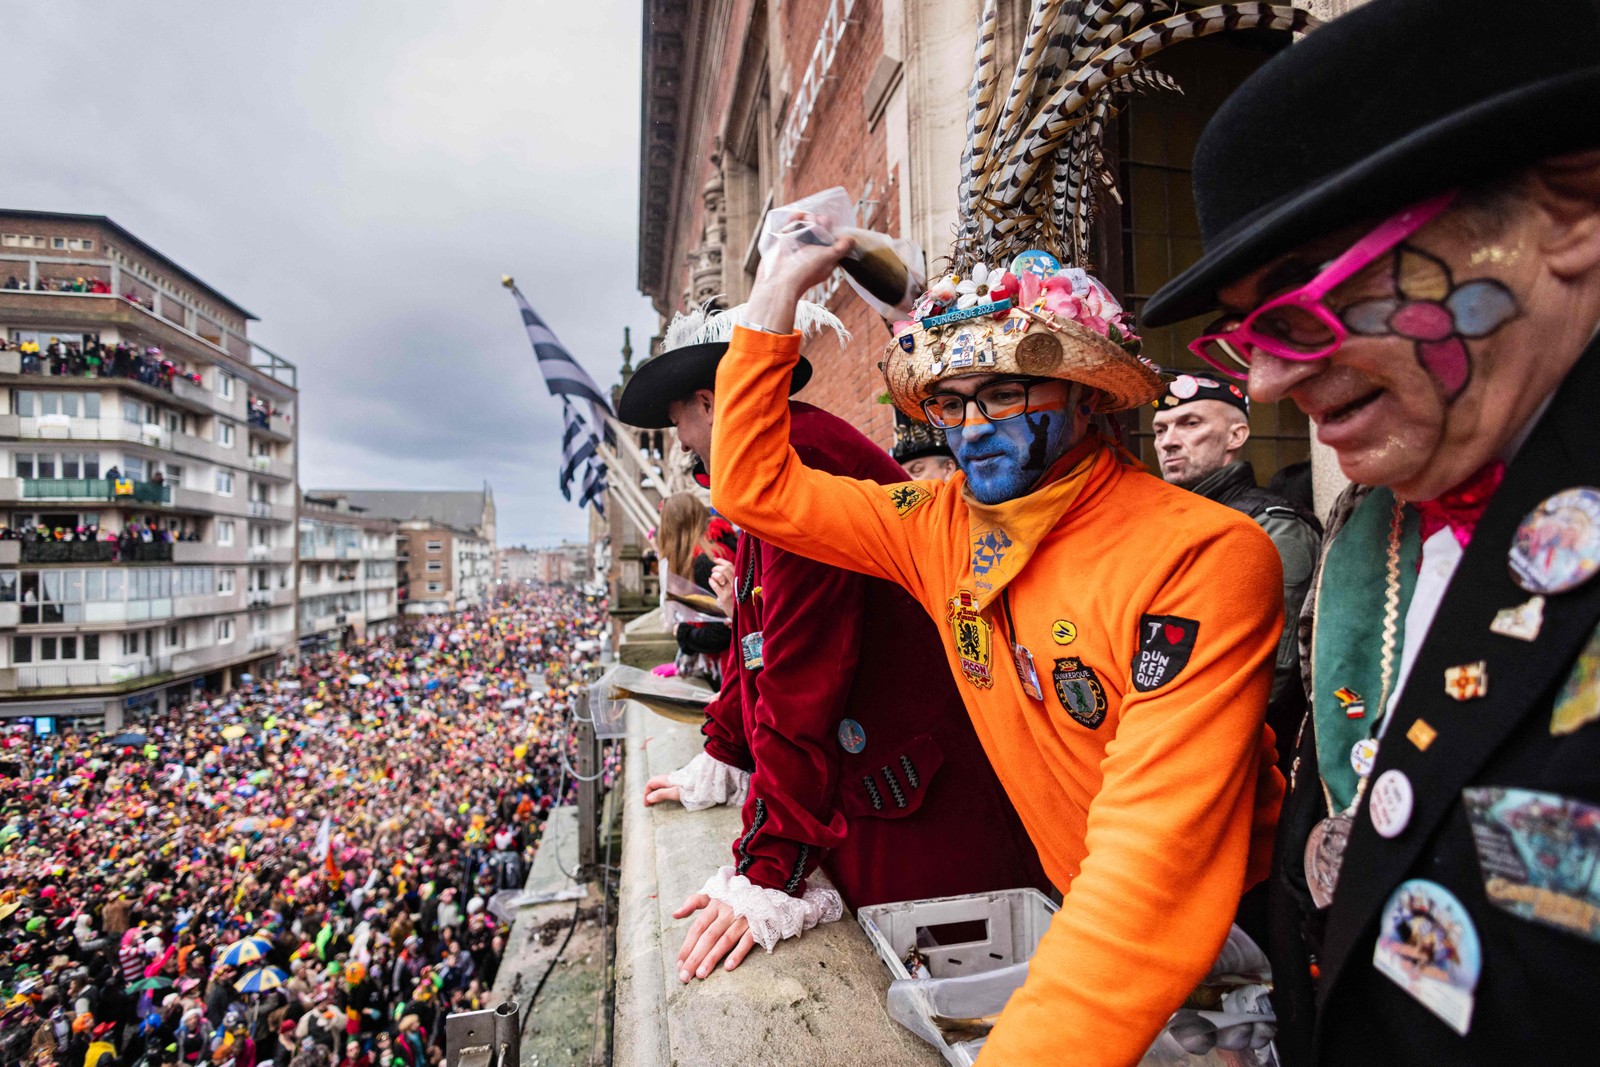 Arremessar arenques para a multidão é uma tradição do carnaval em Dunkirk, no norte da França — Foto: Sameer Al-Doumy / AFP